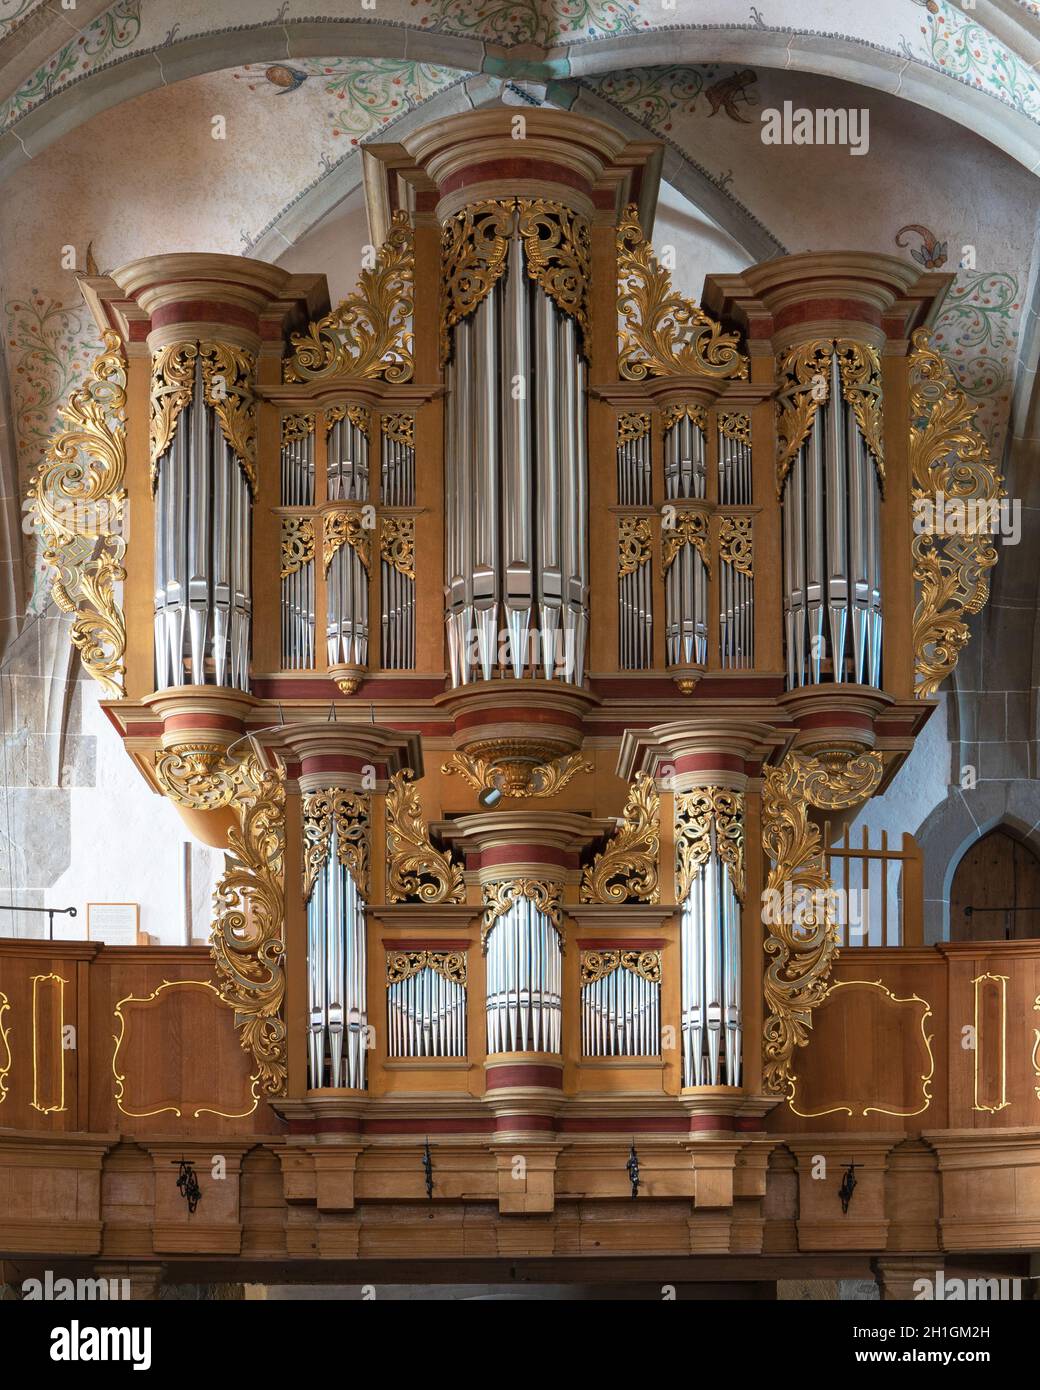 BAD SOBERNHEIM, ALLEMAGNE - 25 JUIN 2020 : orgue de l'église paroissiale Saint Matthias le 25 juin 2020 à Bad Sobernheim, Allemagne Banque D'Images